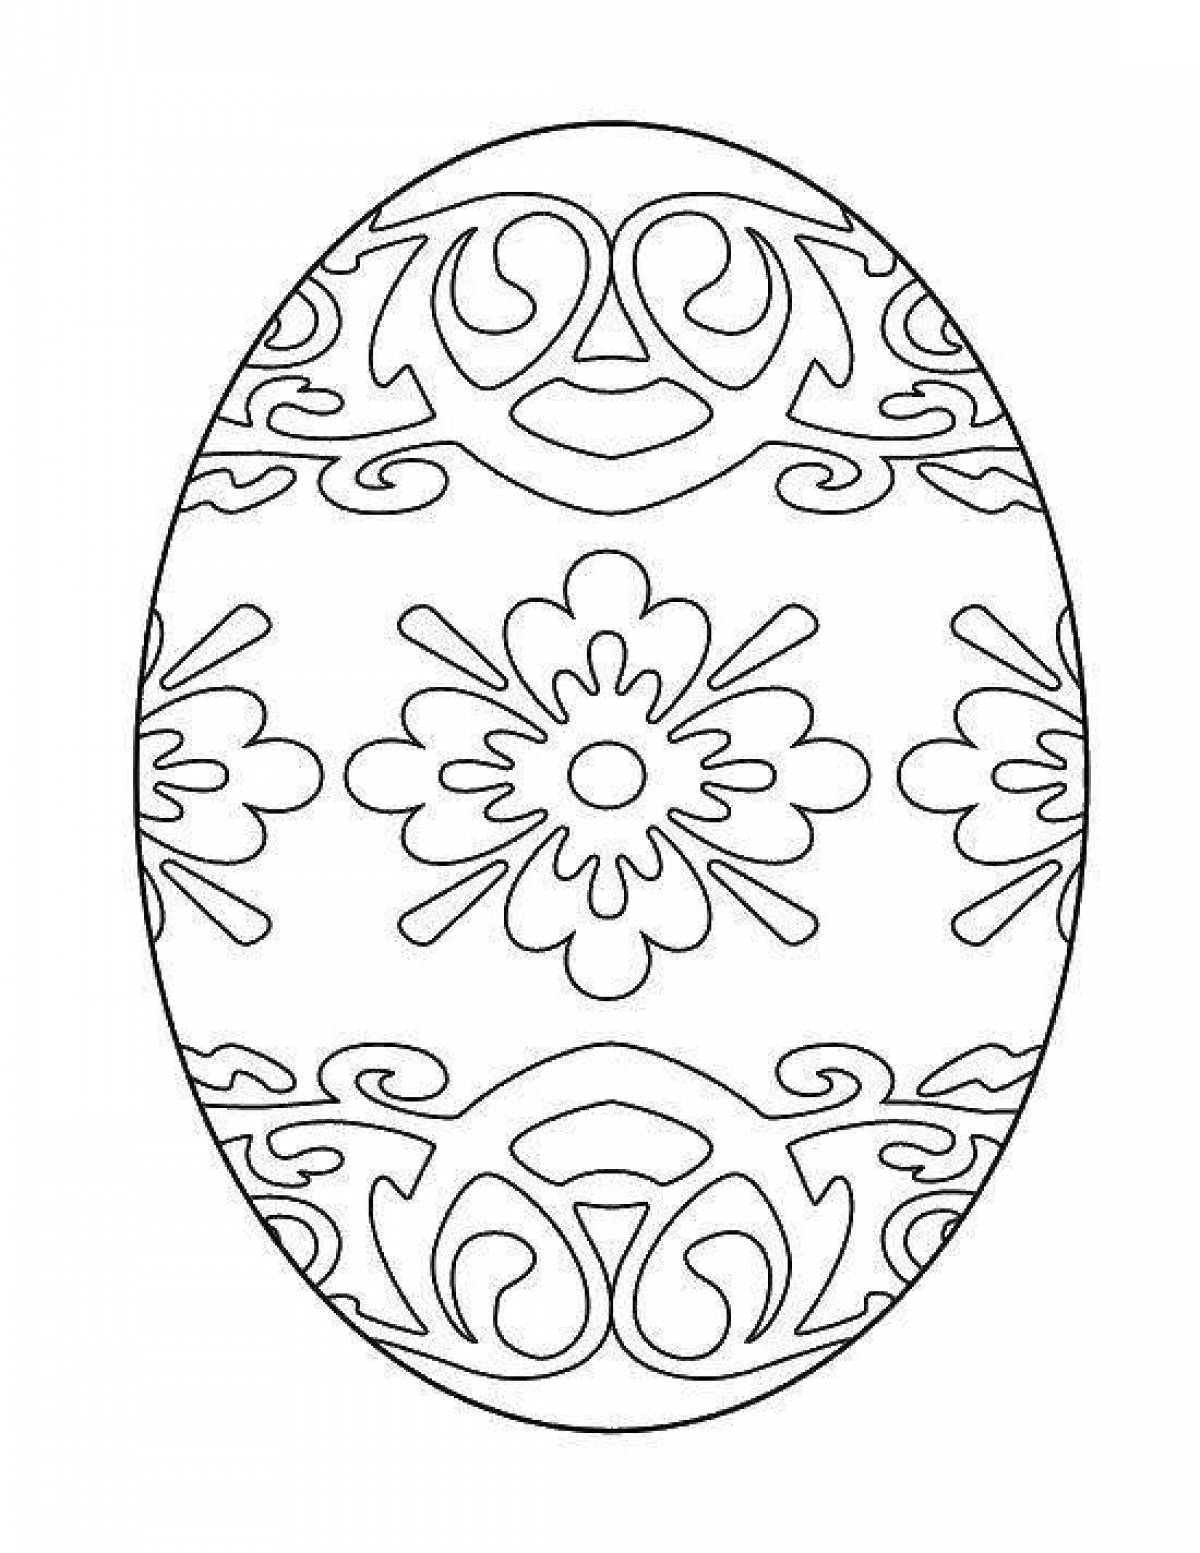 Пасхальное яйцо рисунок для детей. Пасхальное яйцо раскраска шаблон. Роспись пасхального яйца раскраска. Трафареты для росписи пасхальных яиц. Трафареты пасхальных яиц для раскрашивания.